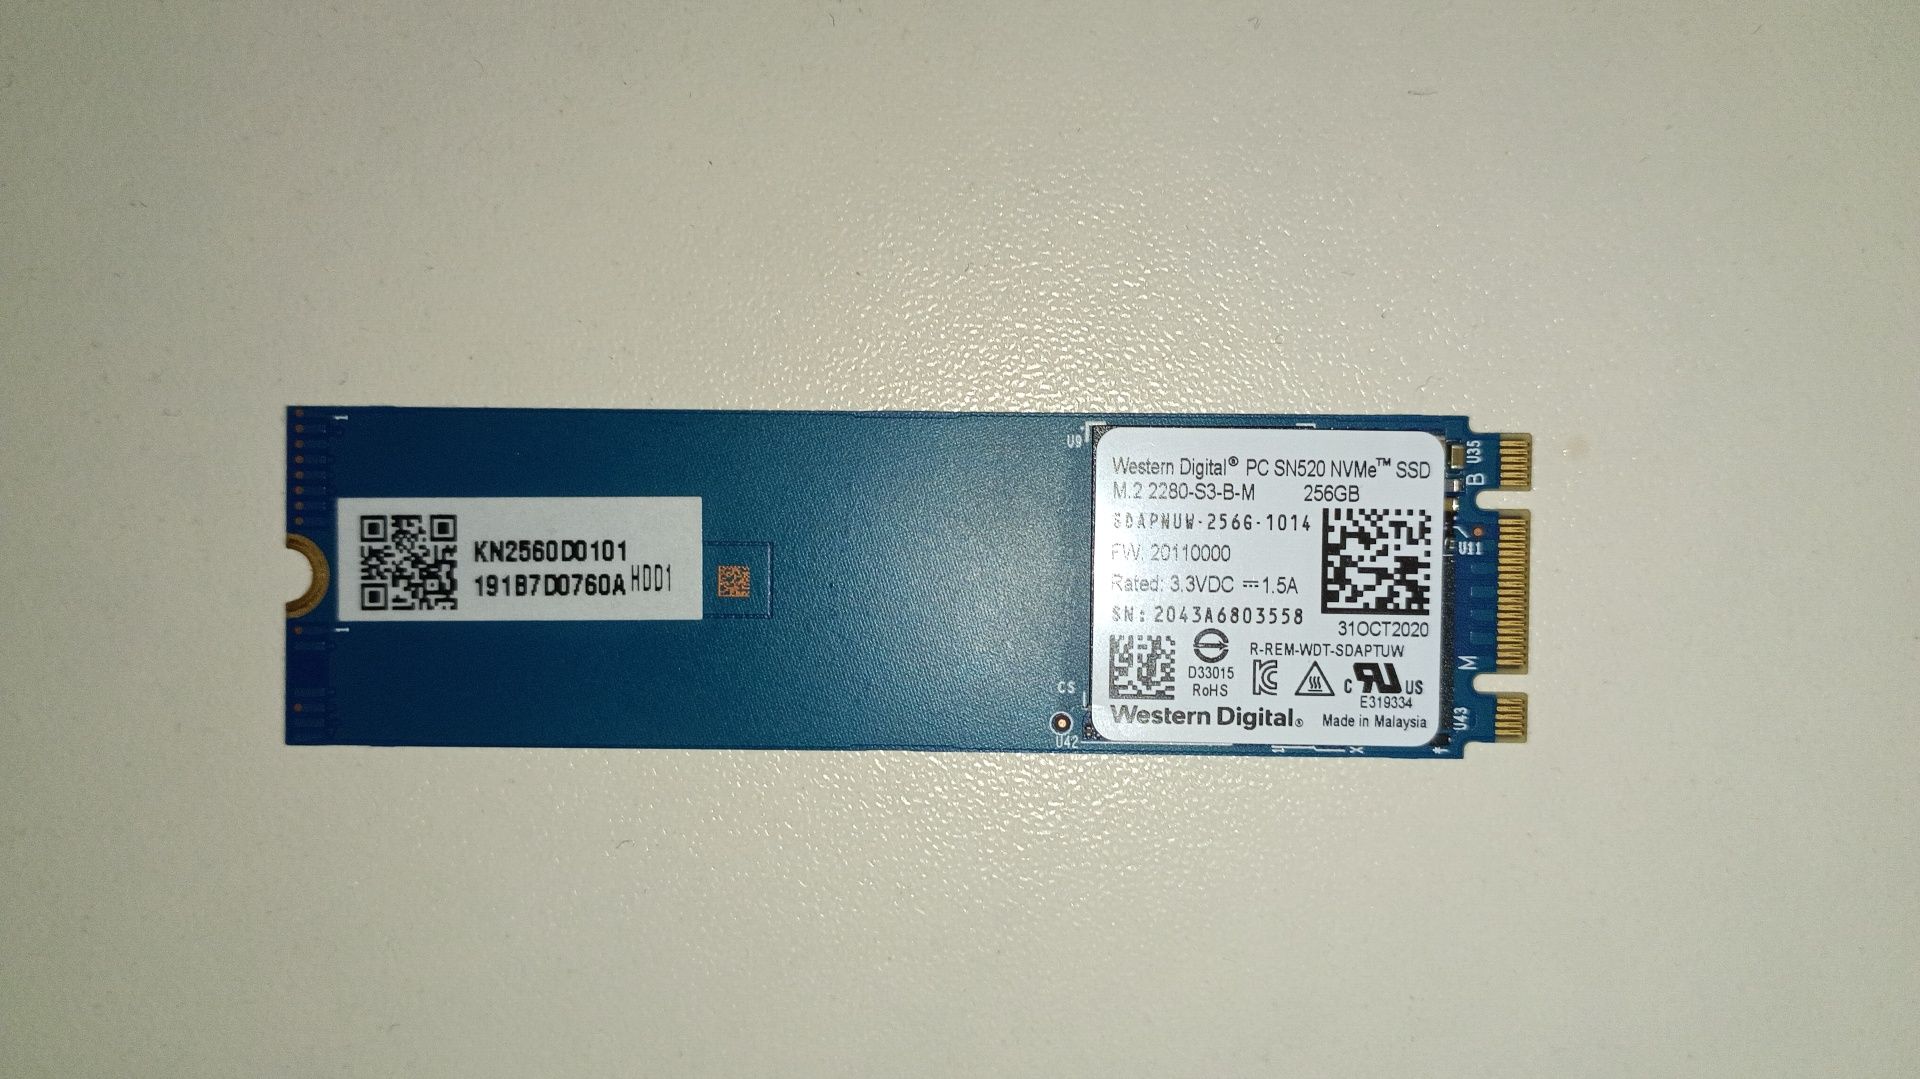 Накопичувач SSD M.2 NVME 256GB WD SN520 (SDAPNUW-256G-1014)